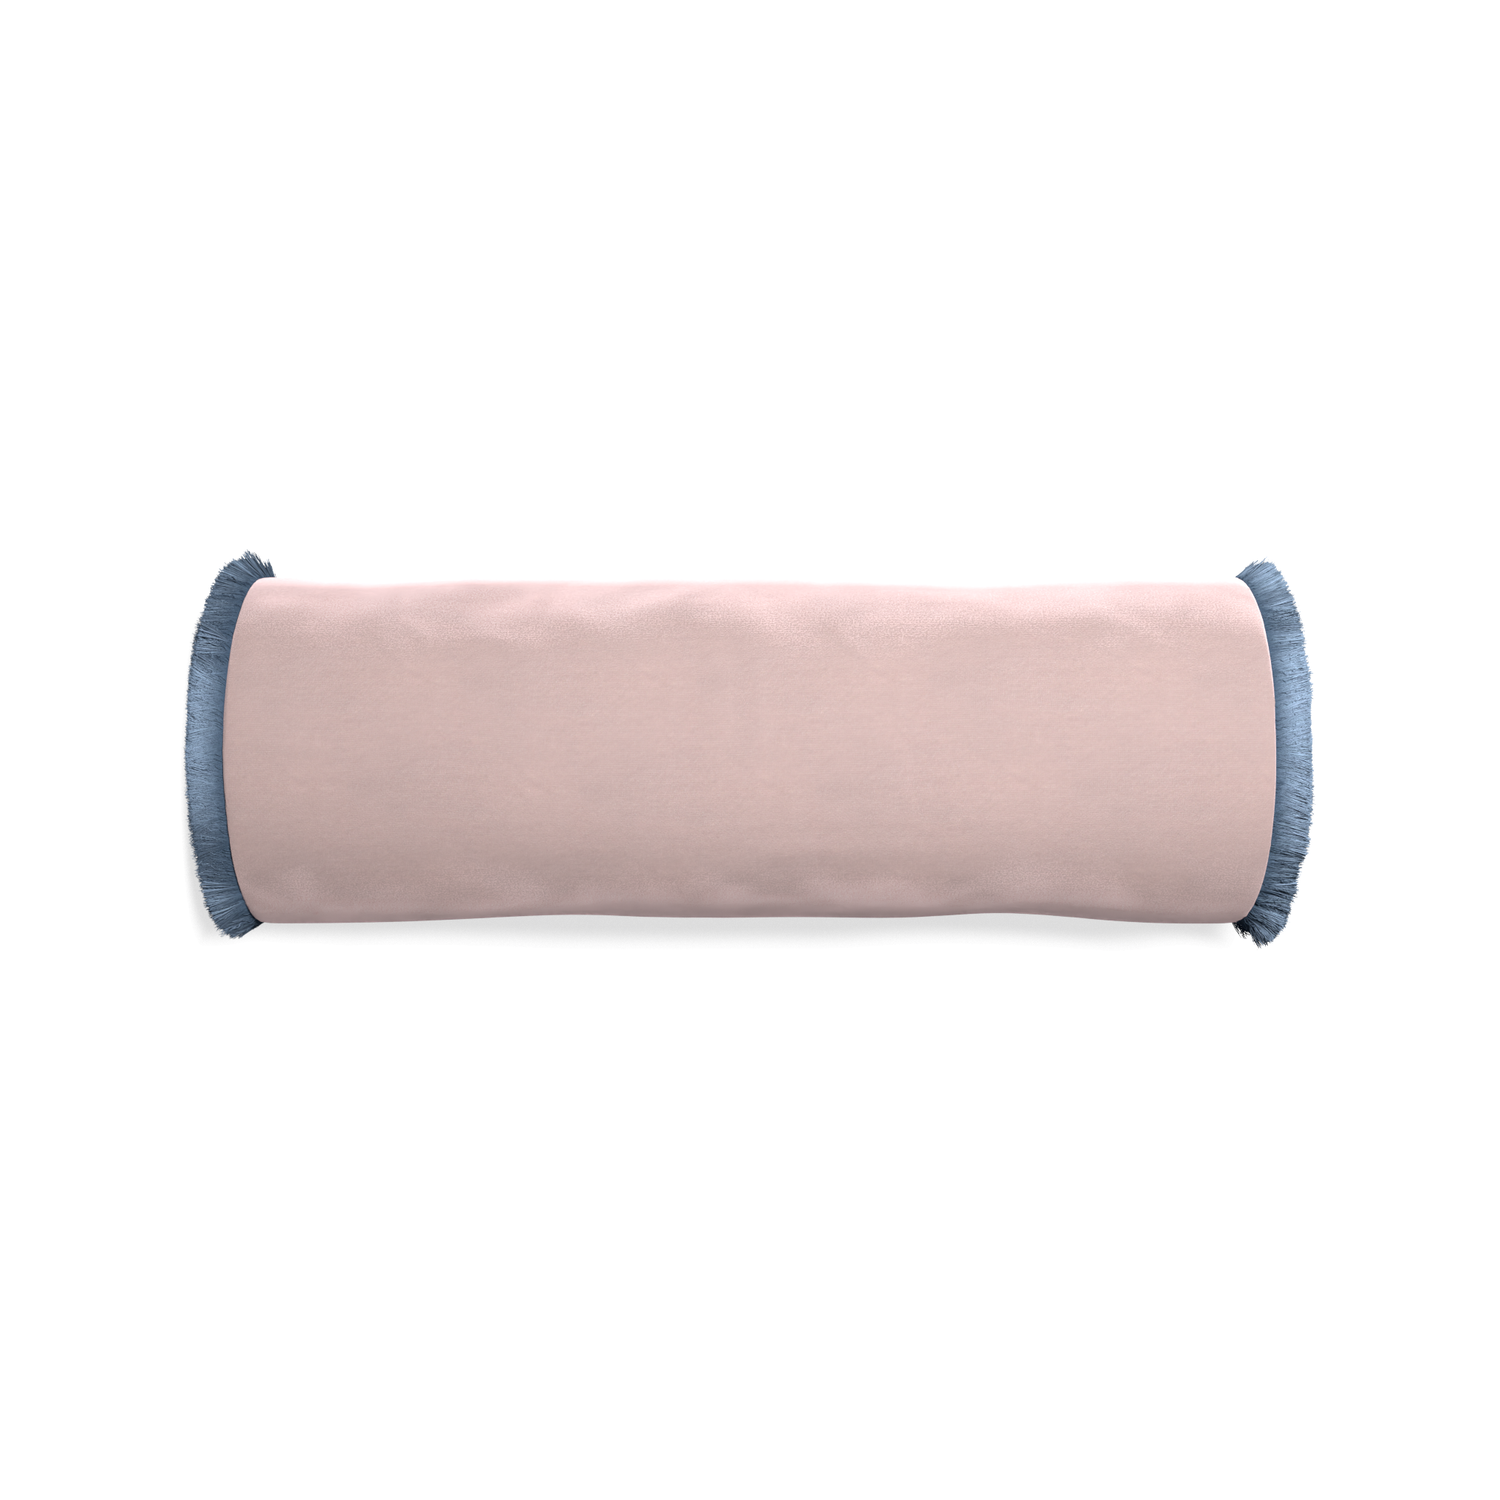 bolster light pink velvet pillow with sky blue fringe 